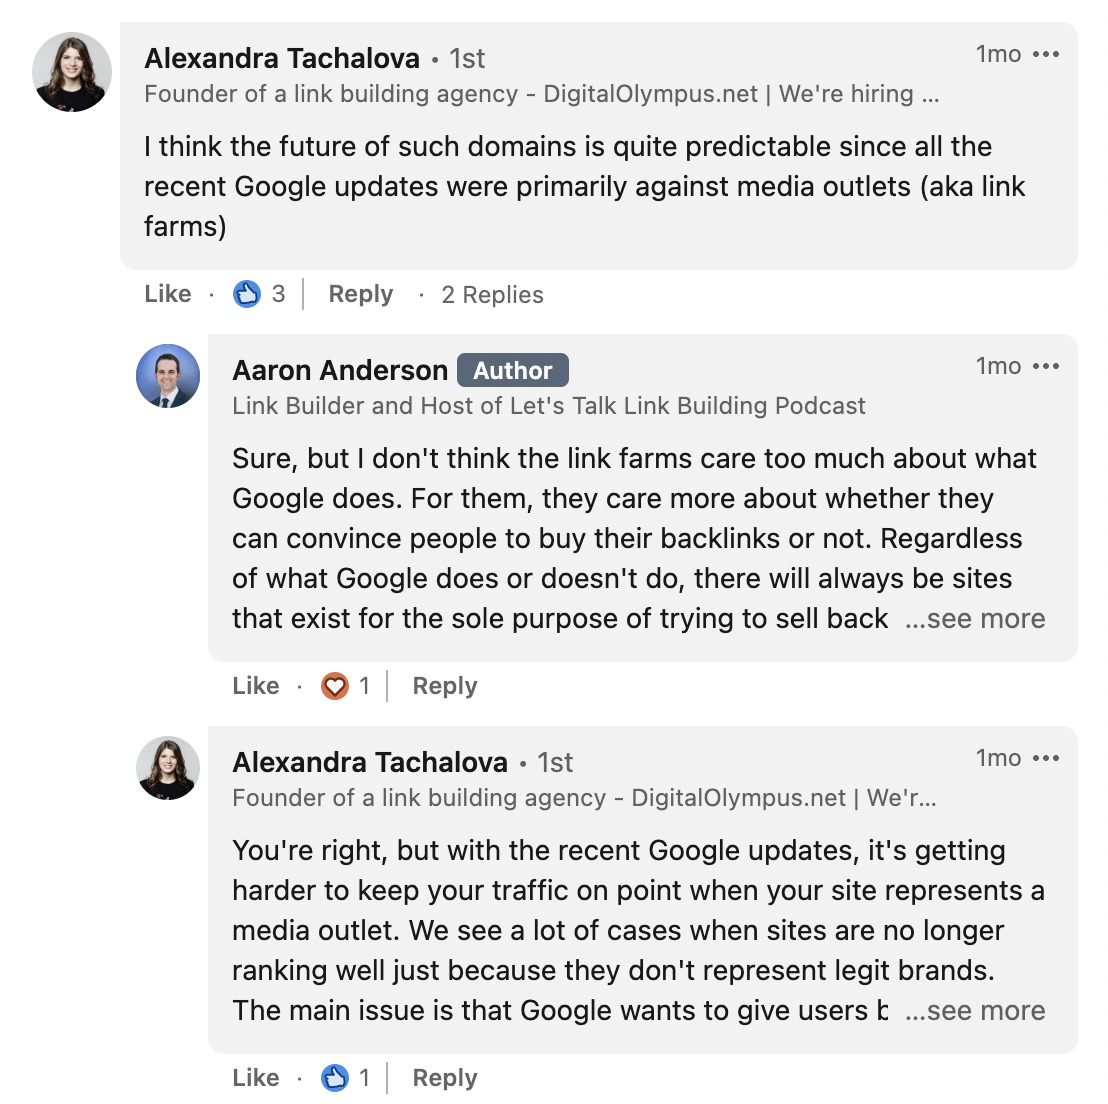 Interacción entre Alexandra Tachalova y Aaron Anderson en comentarios de LinkedIn